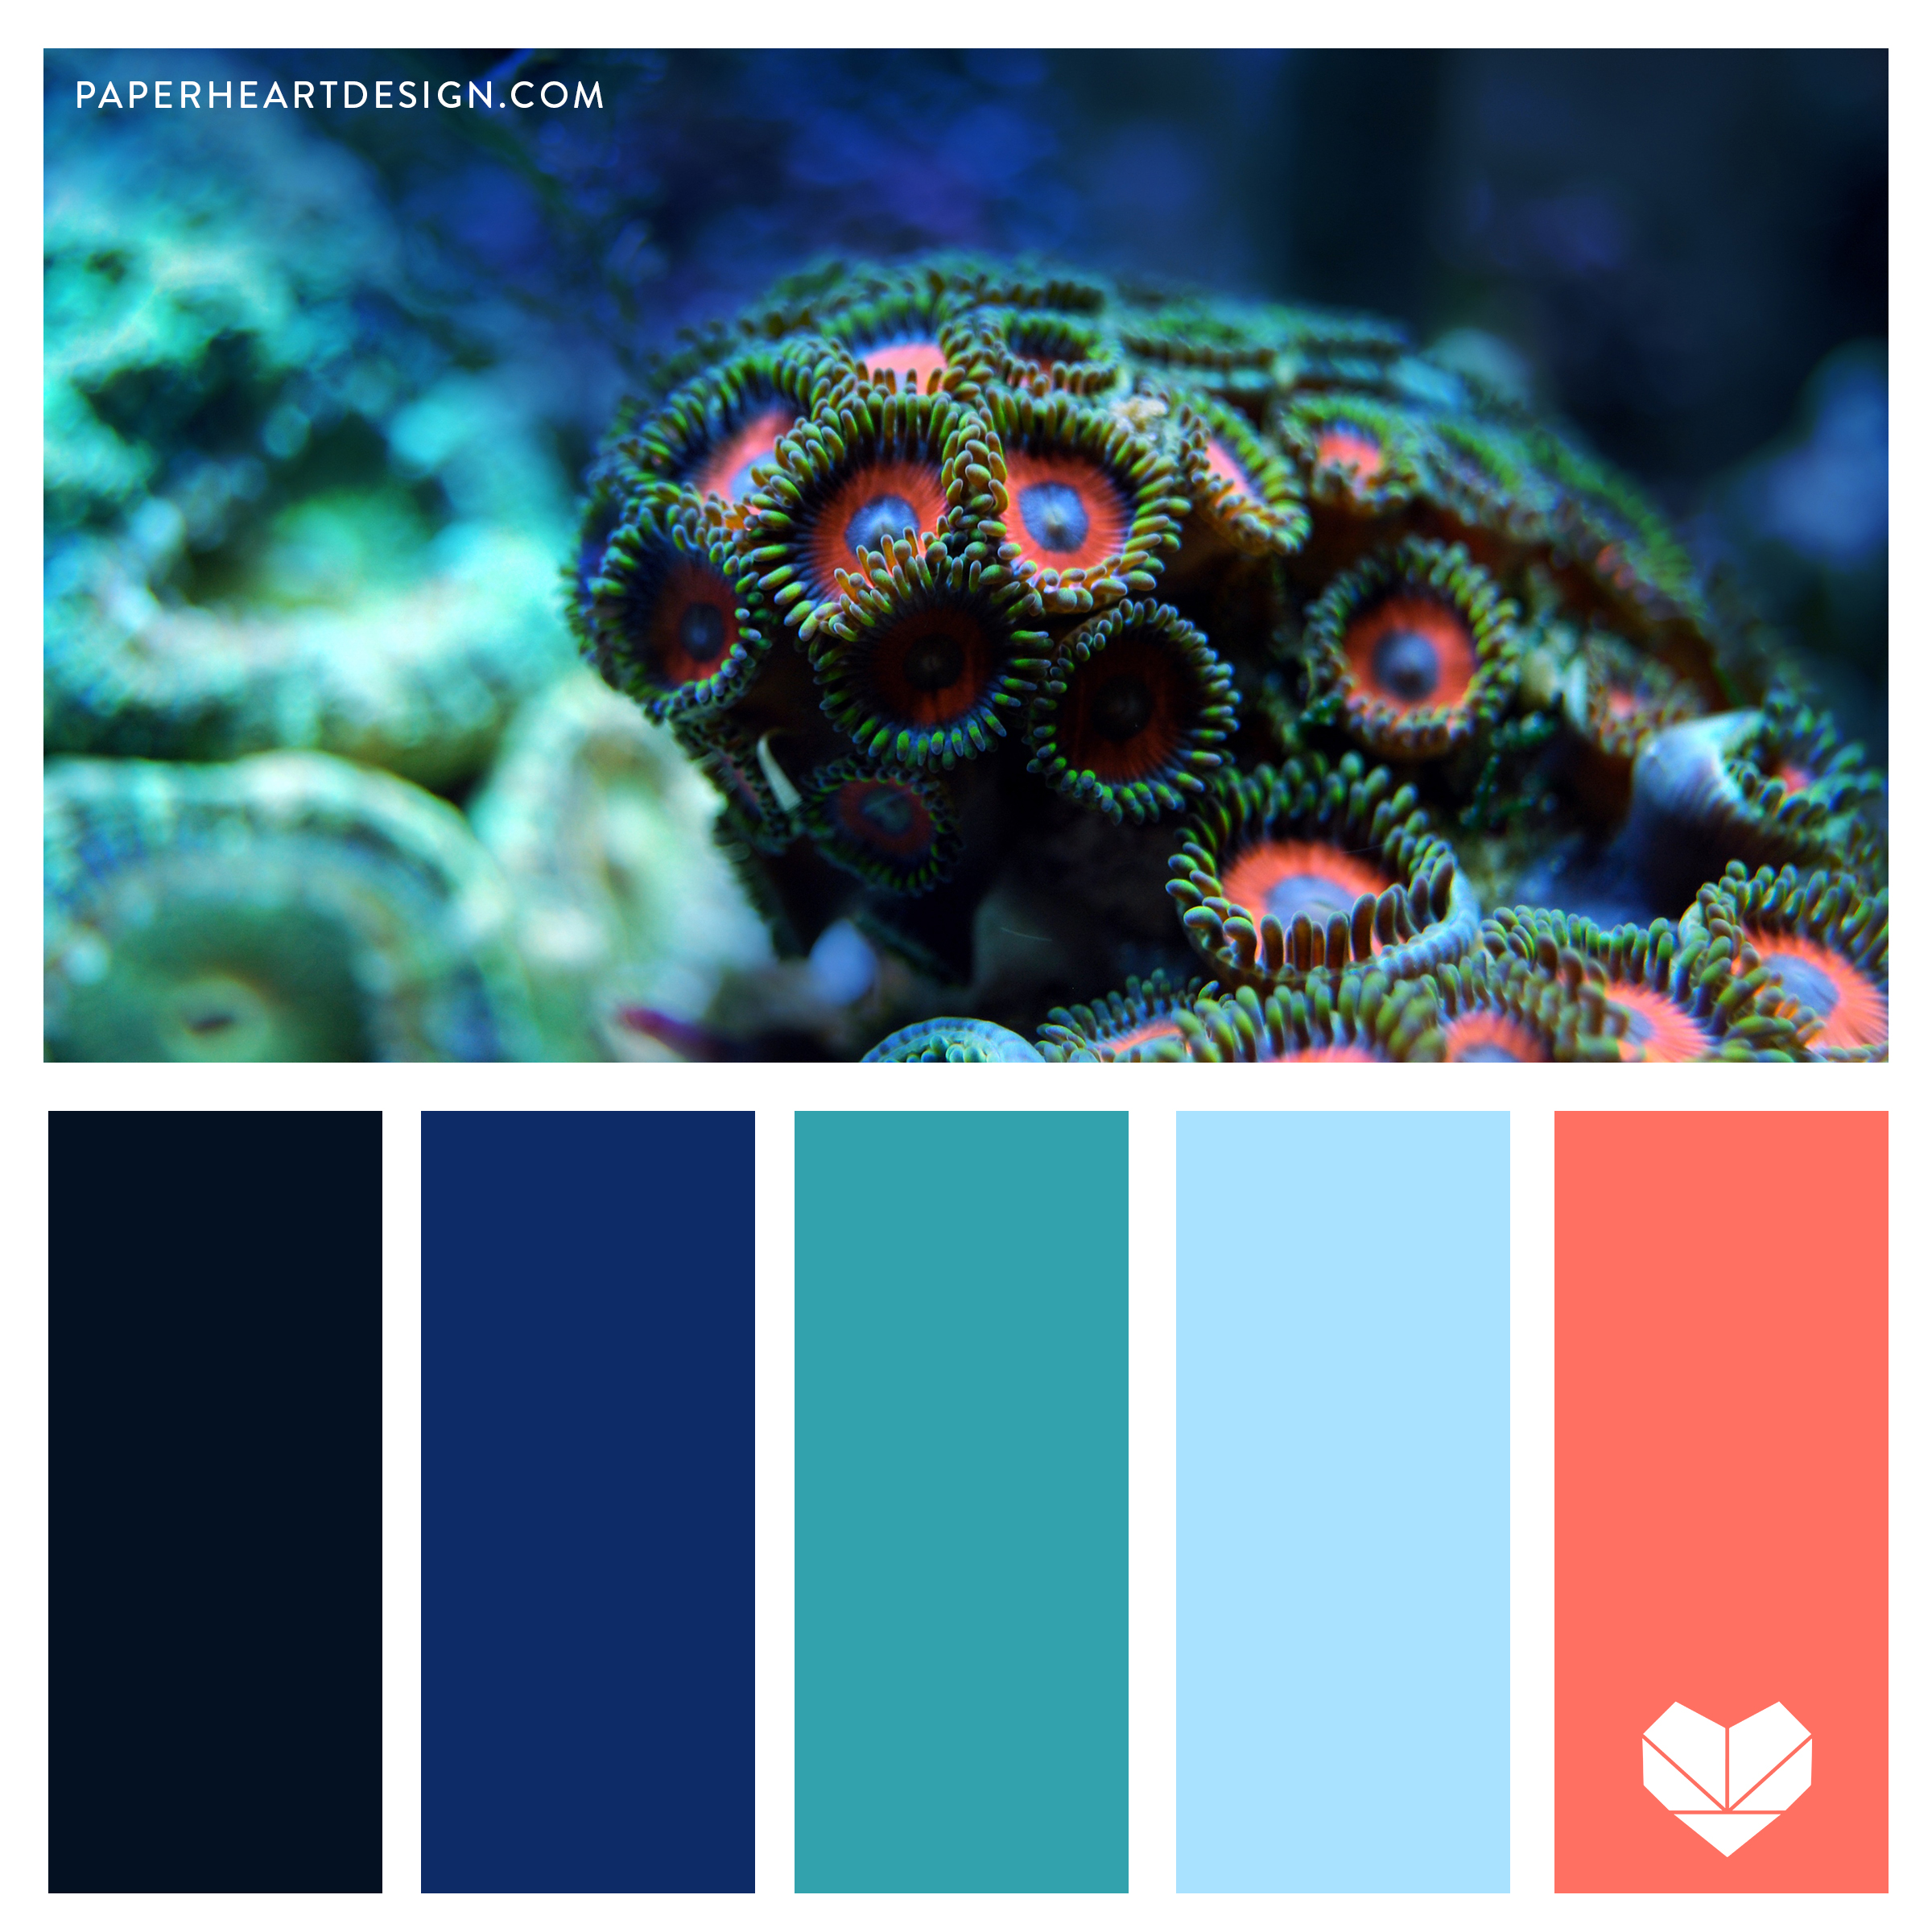 Coral цвет. Корал Блю цвет. Коралловый цвет палитра. Цветовая политра Корал. Палитра синий голубой коралловый.